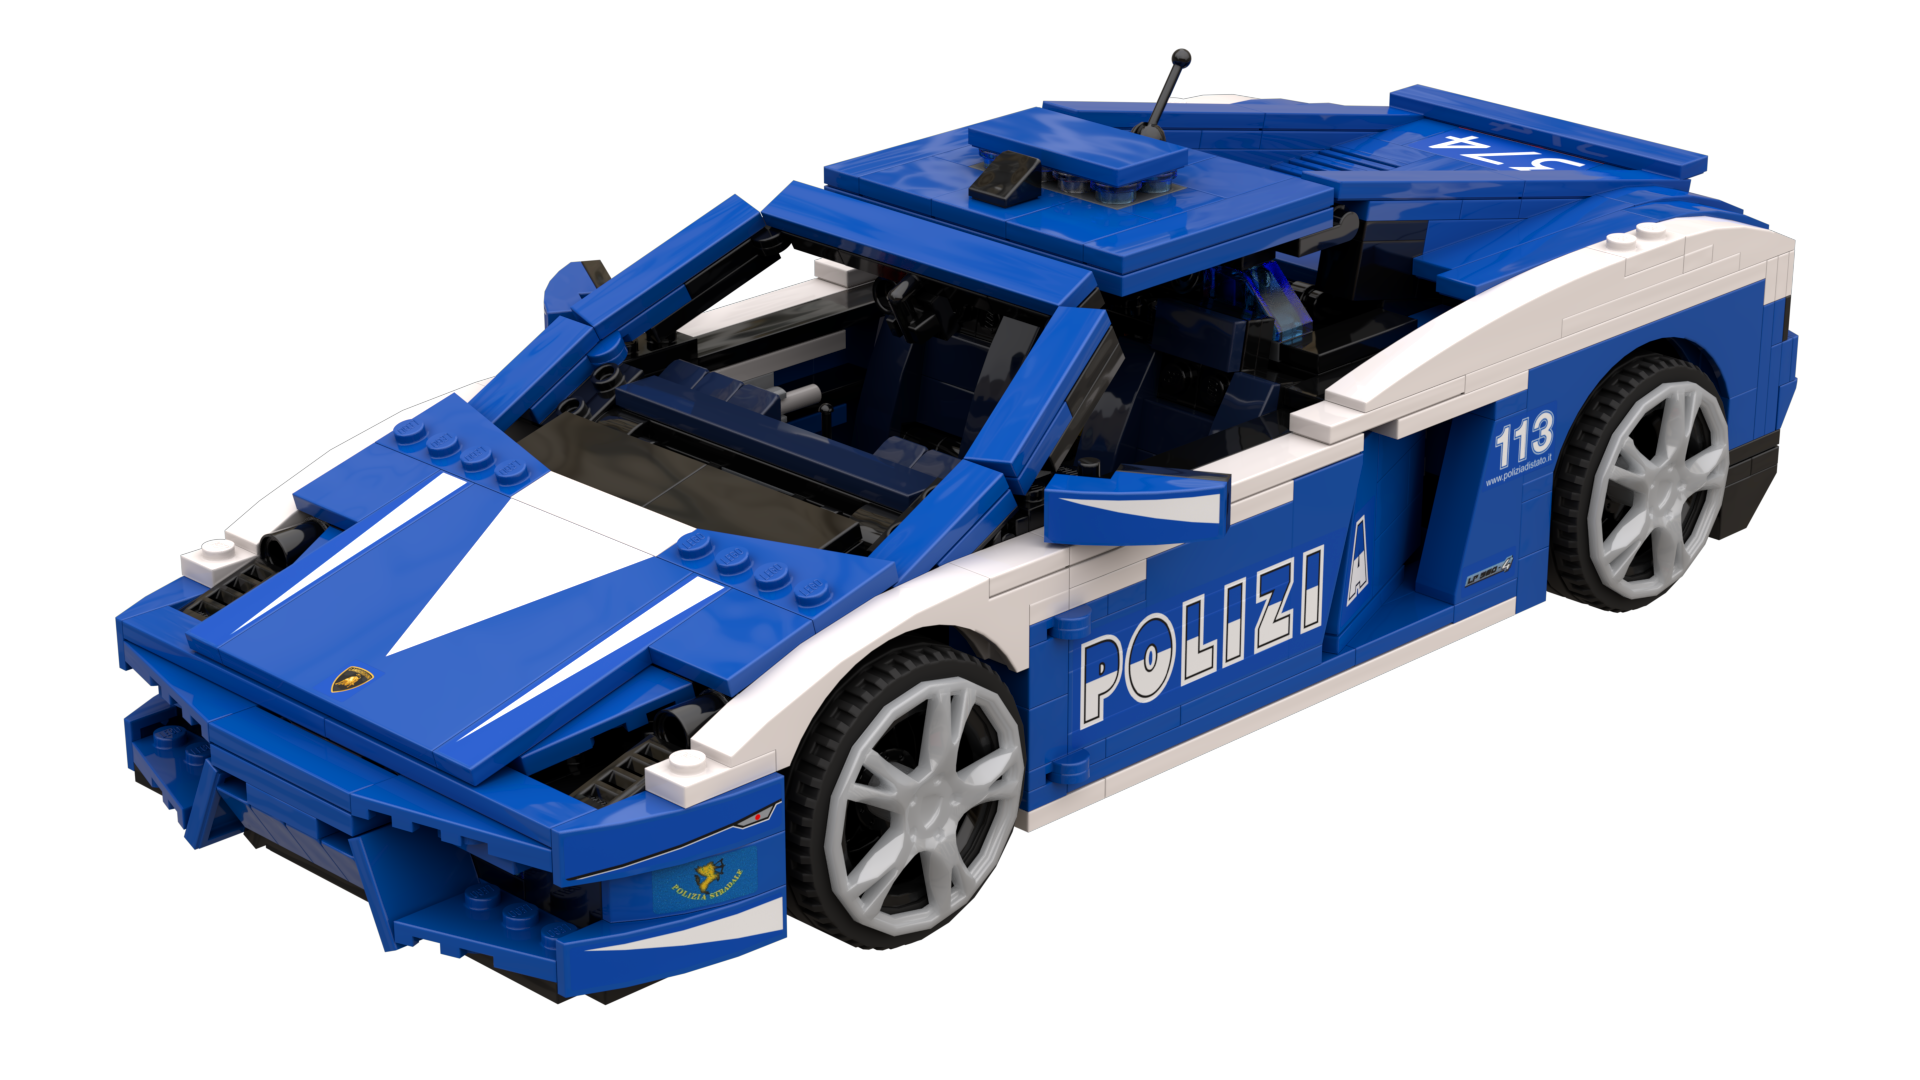 8214: Lamborghini Gallardo LP 560-4 Polizia